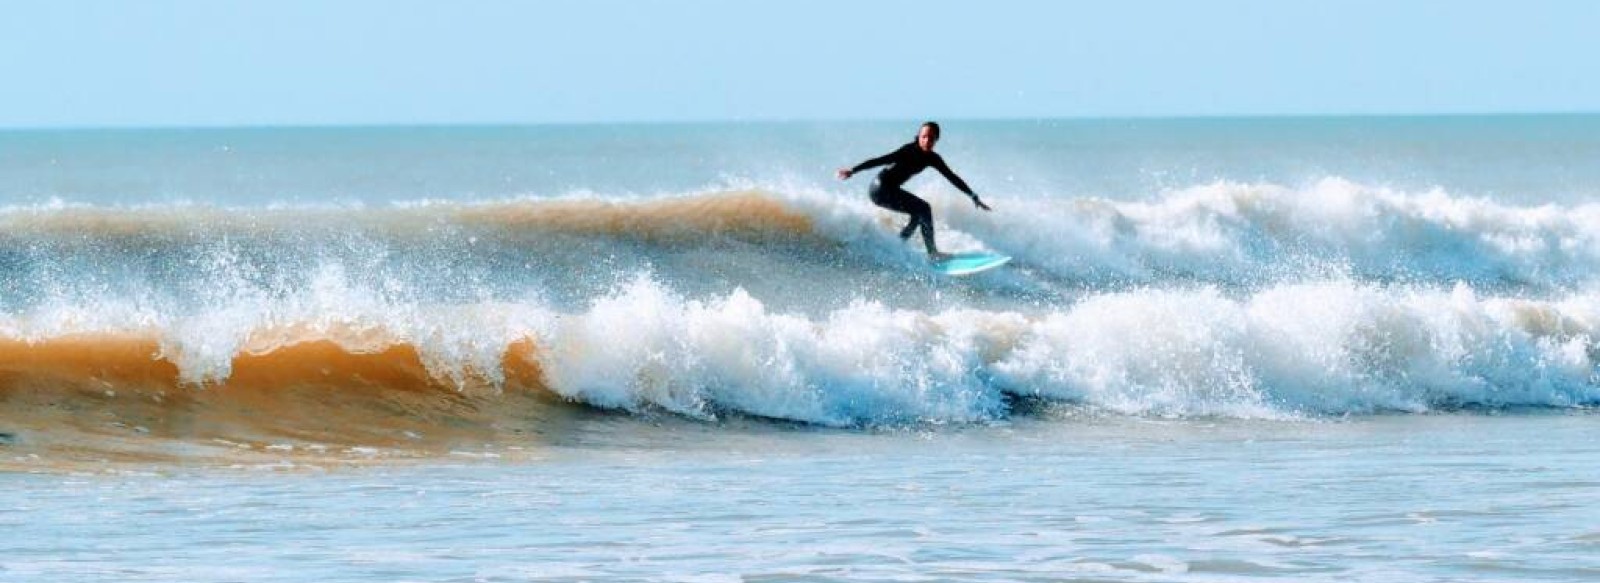 COURS DE SURF - RIDING FACTORY